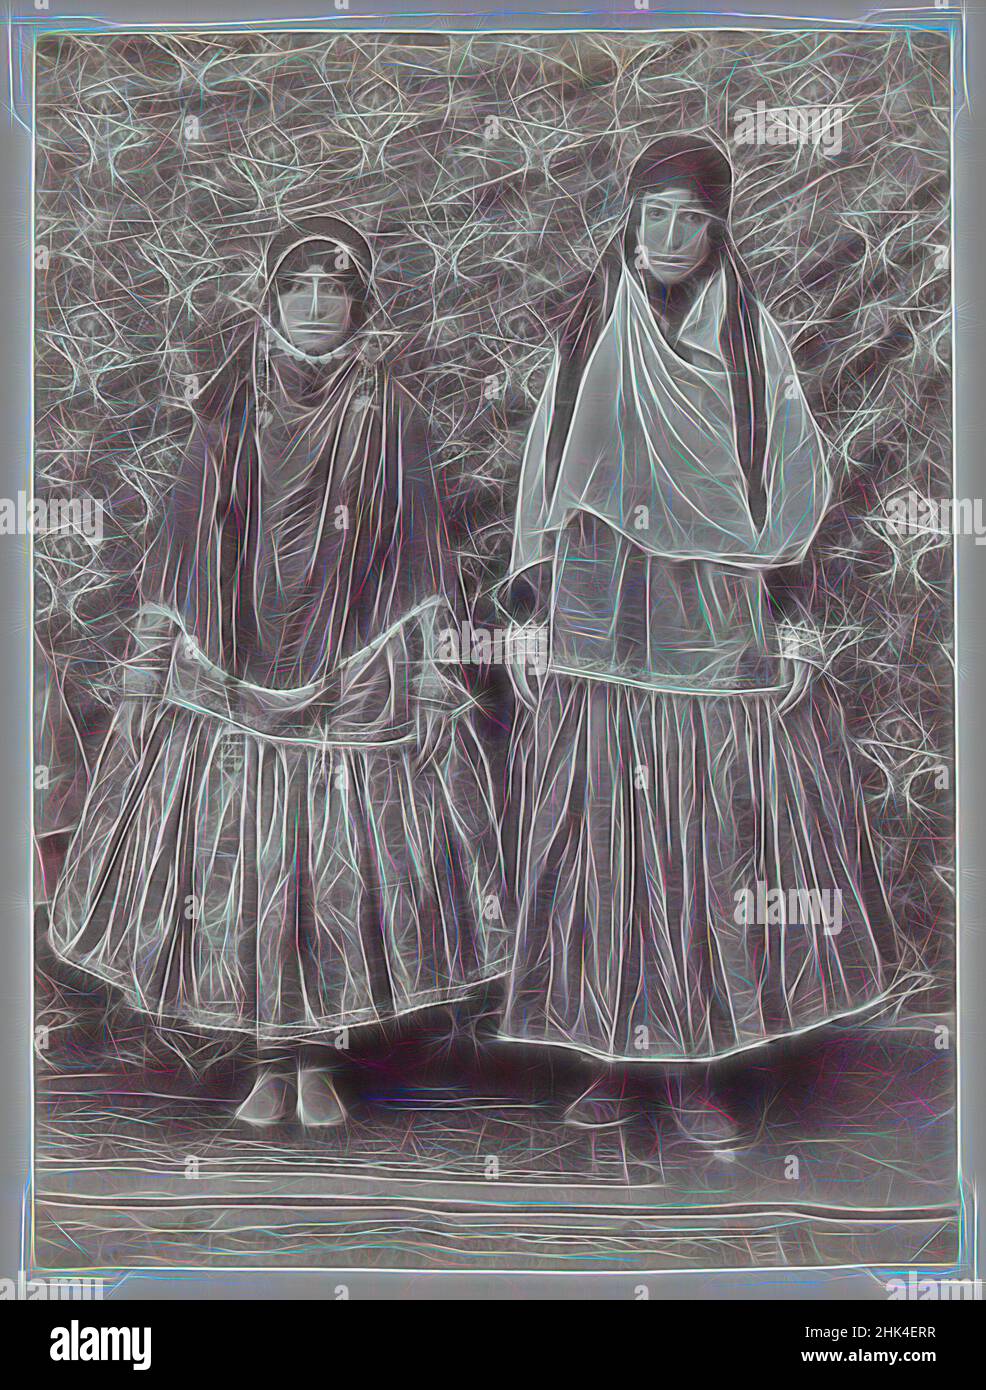 Inspiriert von zwei Frauen in Tribal-Kostüm, möglicherweise Antoin Sevruguin, Albumen Silberfoto, Ende 19th Jahrhundert, Qajar, Qajar-Periode, 7 3/8 x 5 1/2 Zoll, 18,7 x 14,0 cm, 19th Jahrhundert, Kostüm, historische Mode, Iran, Schmuck, Naher Osten, Persien, Foto, Porträt, sevruguin, Tribal, Women, Reinmagined by Artotop. Klassische Kunst neu erfunden mit einem modernen Twist. Design von warmen fröhlichen Leuchten der Helligkeit und Lichtstrahl Strahlkraft. Fotografie inspiriert von Surrealismus und Futurismus, umarmt dynamische Energie der modernen Technologie, Bewegung, Geschwindigkeit und Kultur zu revolutionieren Stockfoto